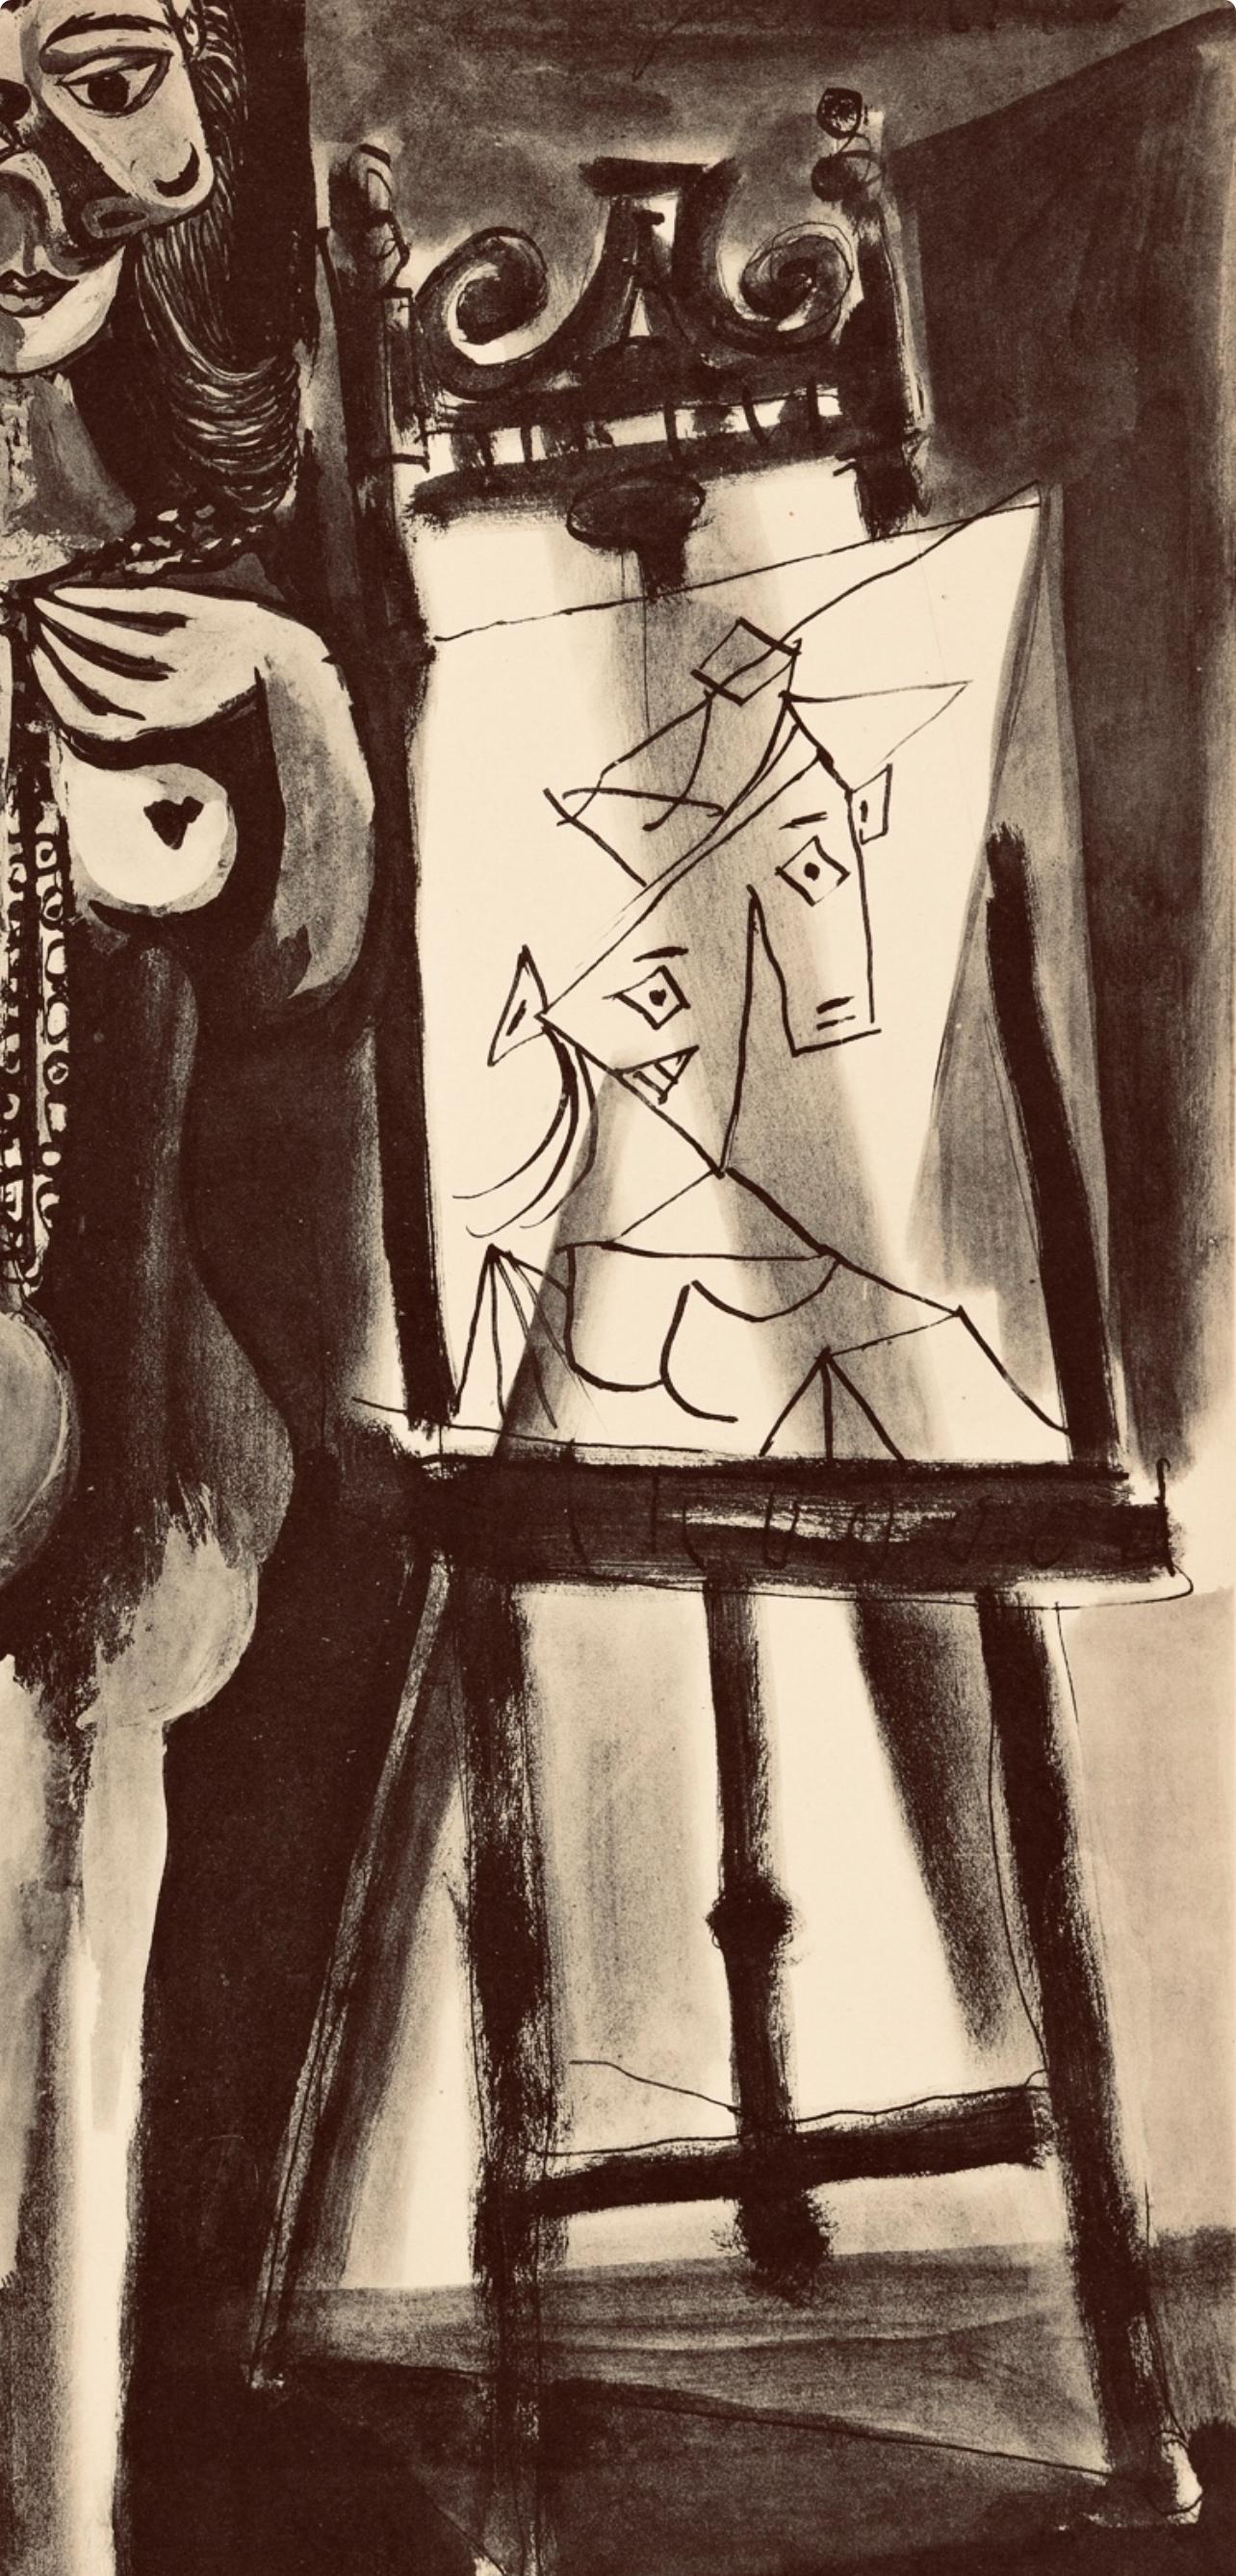 Picasso, Composition, Carnet de dessins de Picasso, Cahiers d'Art (d'après) - Cubisme Print par Pablo Picasso